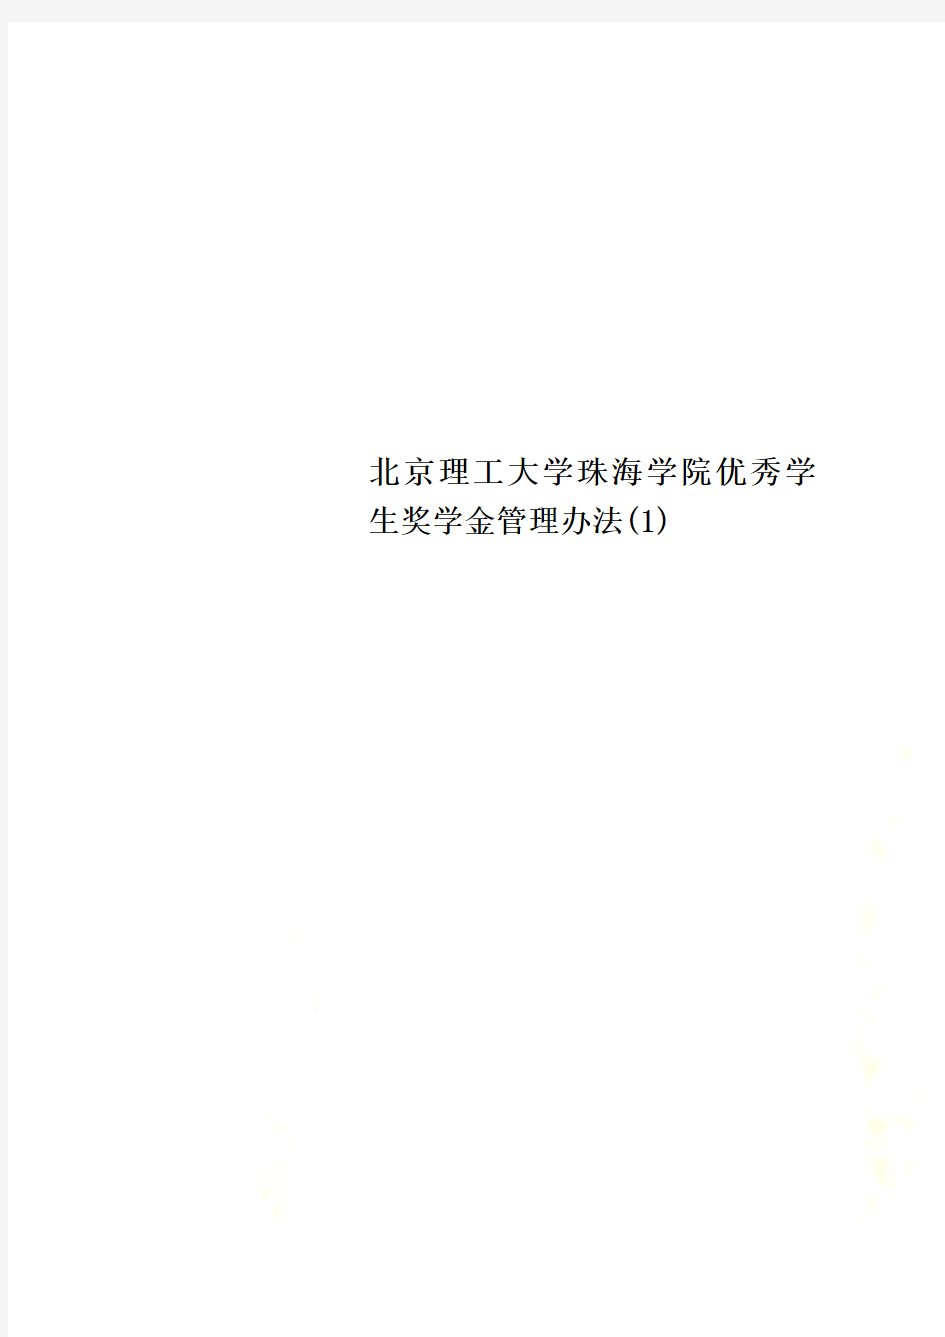 北京理工大学珠海学院优秀学生奖学金管理办法(1)